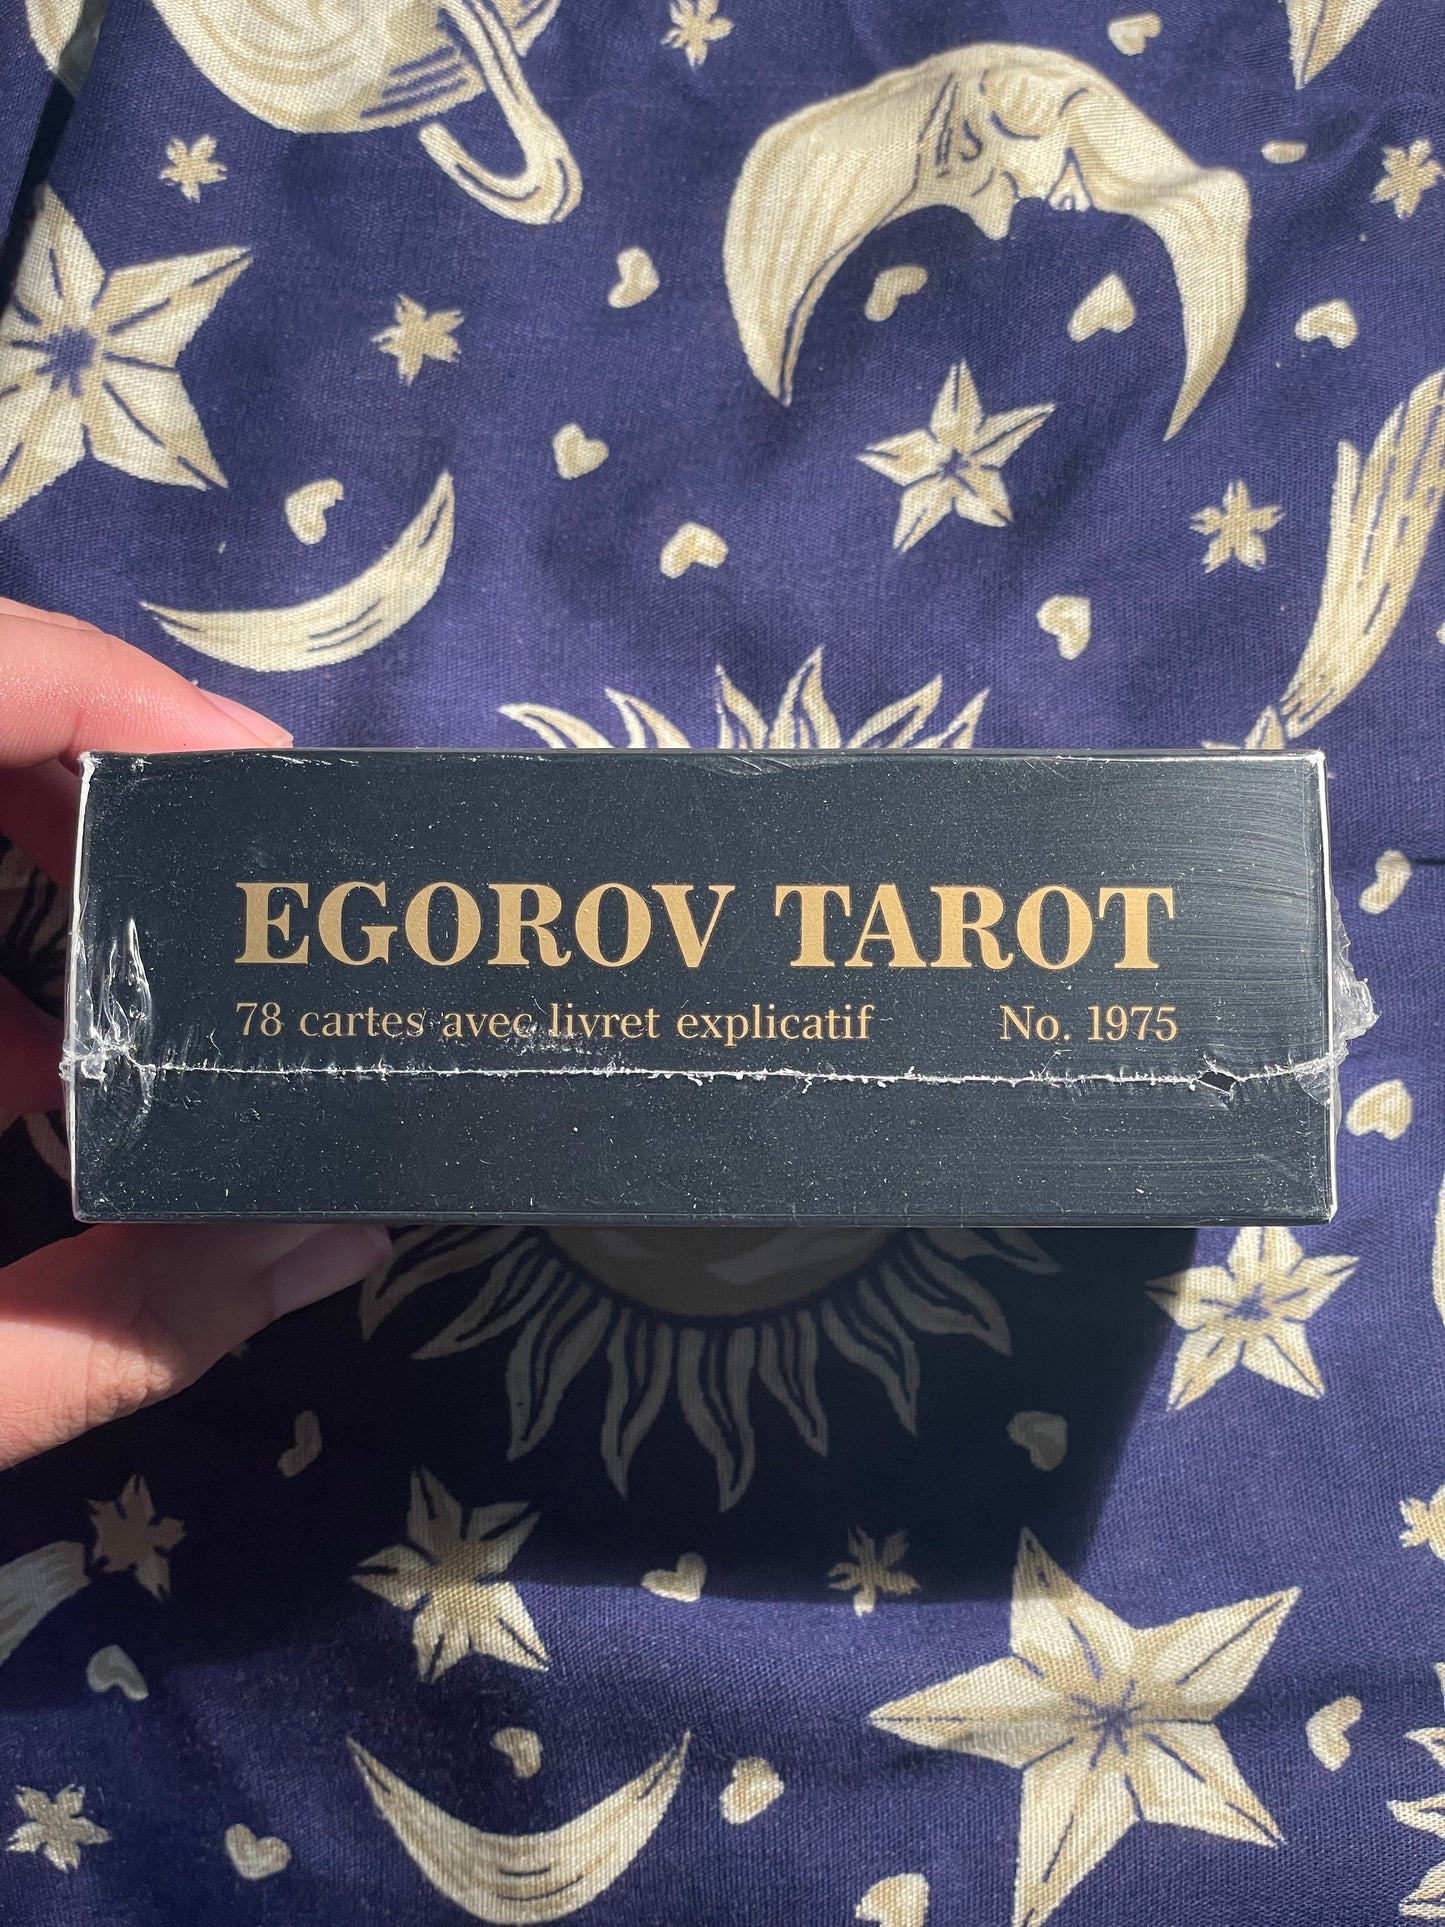 Vintage Egorov Gold Edition Tarot